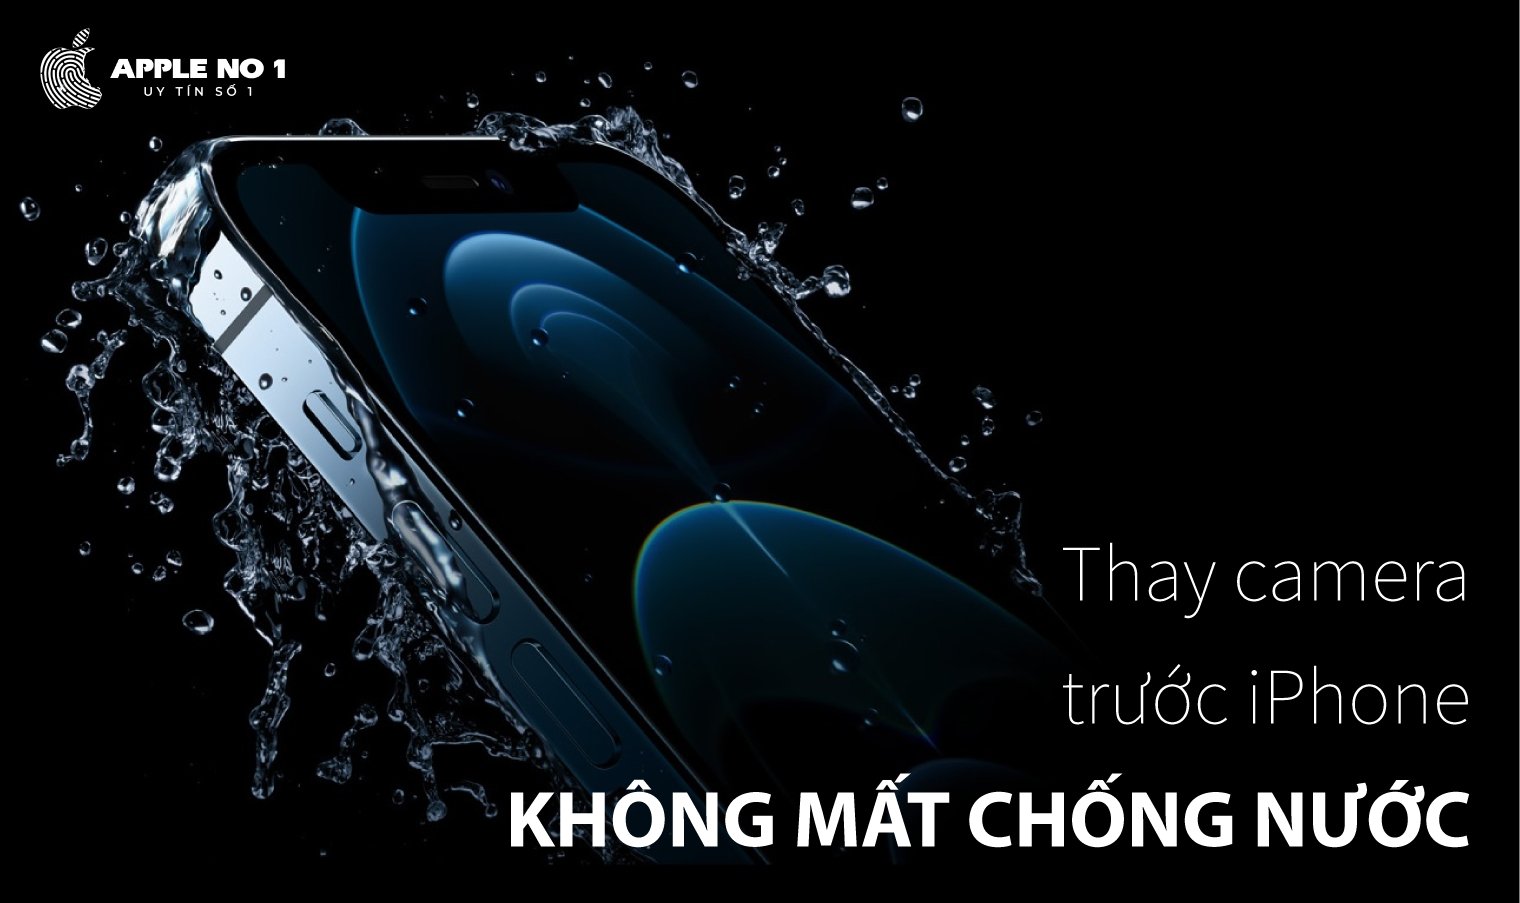 thay camera truoc iPhone 12 Pro co mat chong nuoc khong?